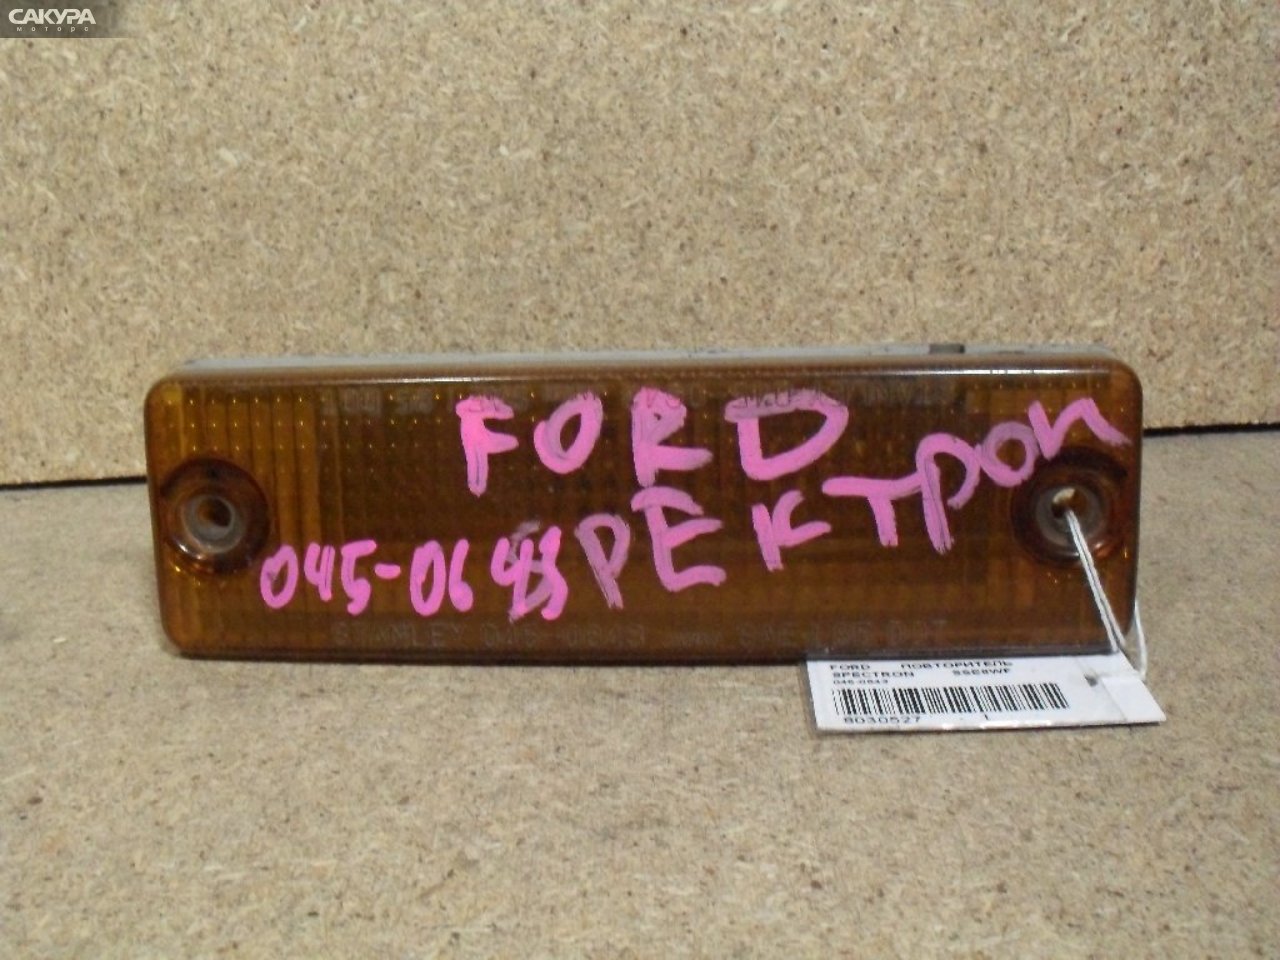 Повторитель левый Ford Spectron SSE8WF 045-0643: купить в Сакура Абакан.